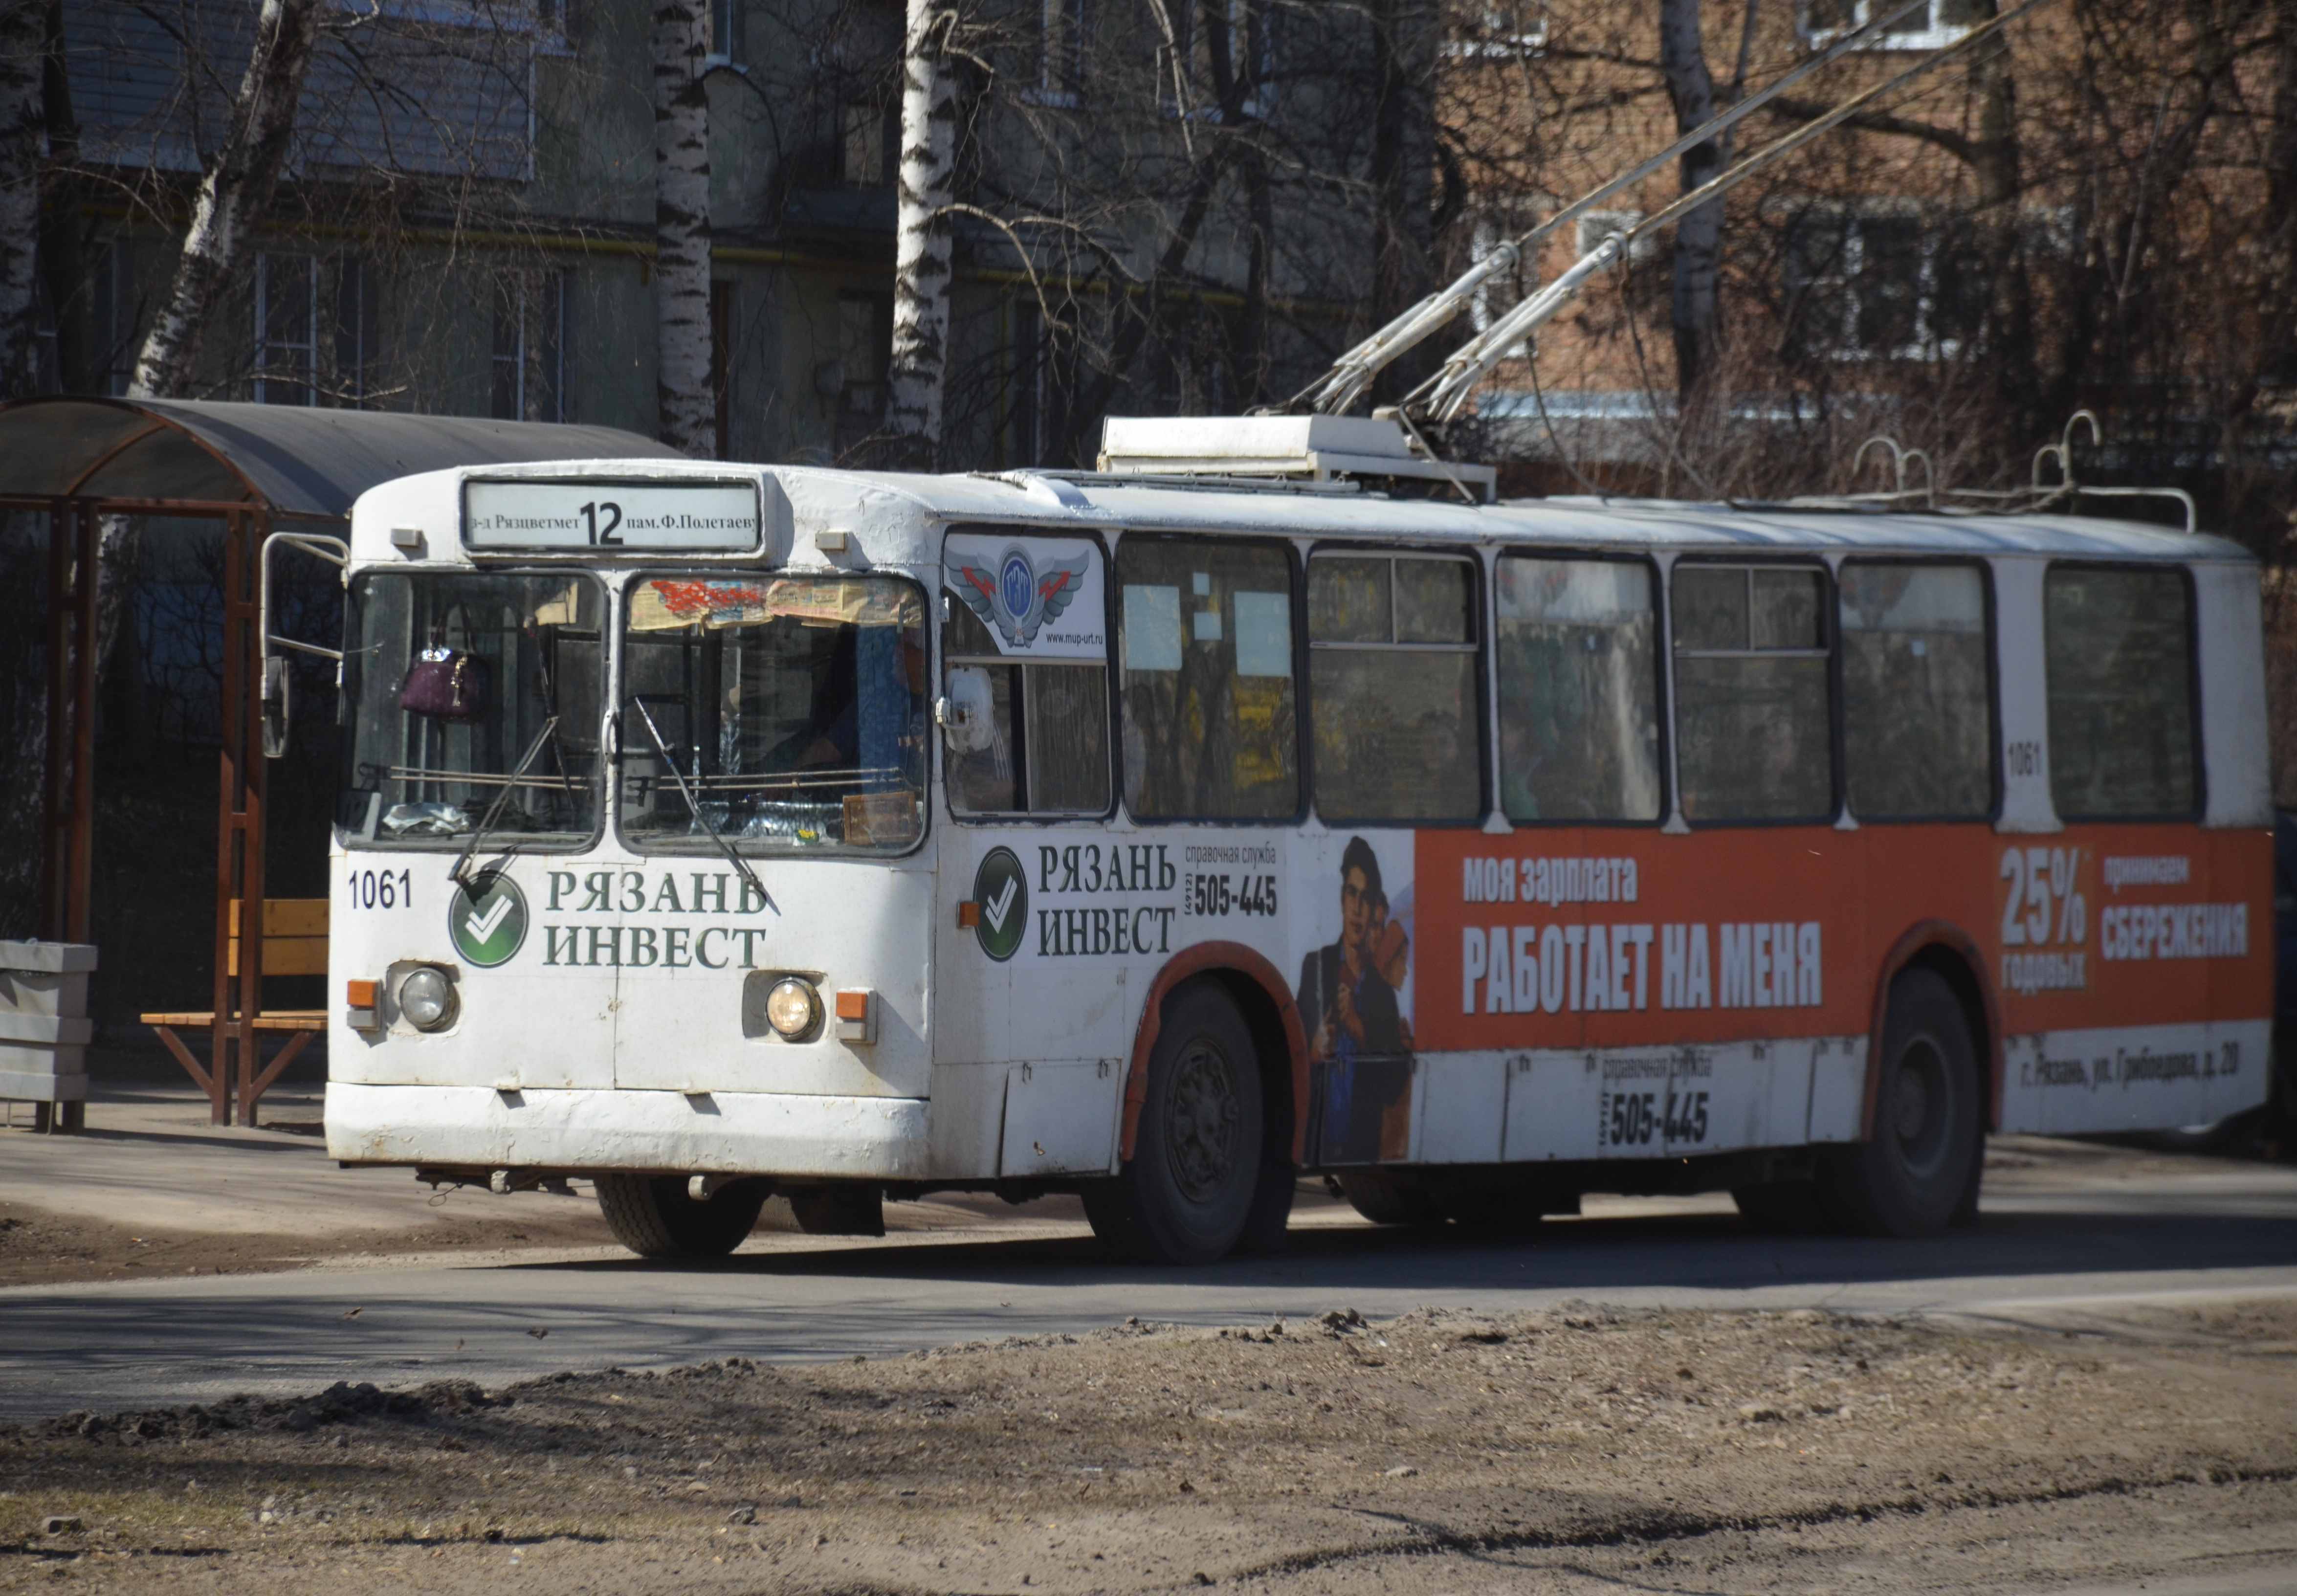 Проезд в рязанском транспорте может подорожать до 22 рублей